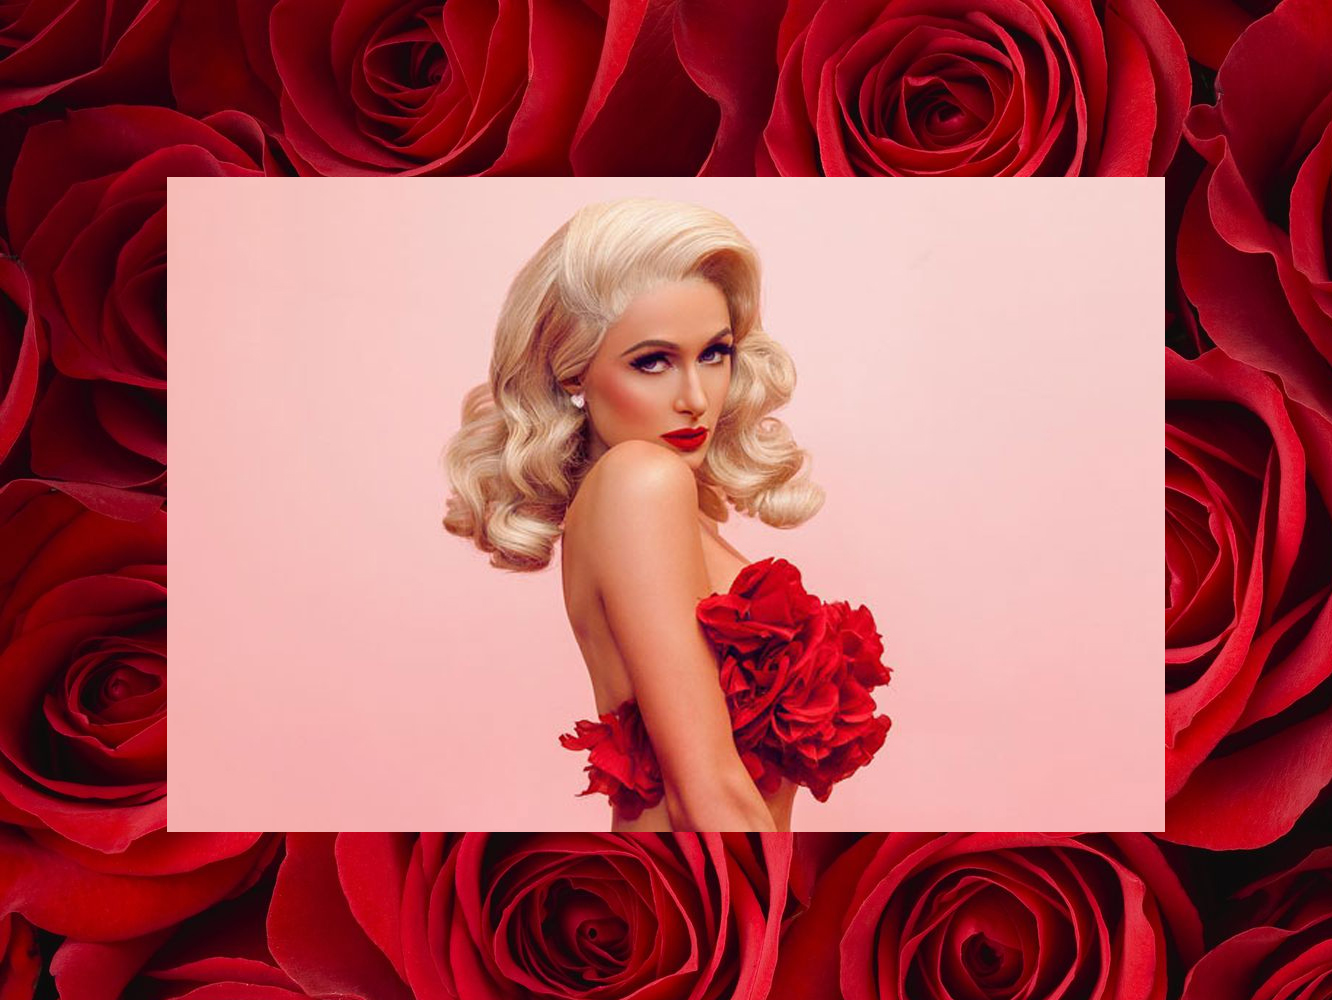  Paris Hilton llega tardísimo al doo-wop de ‘I Need You’: vuelve ya al pop sucio de ‘Paris’, gracias